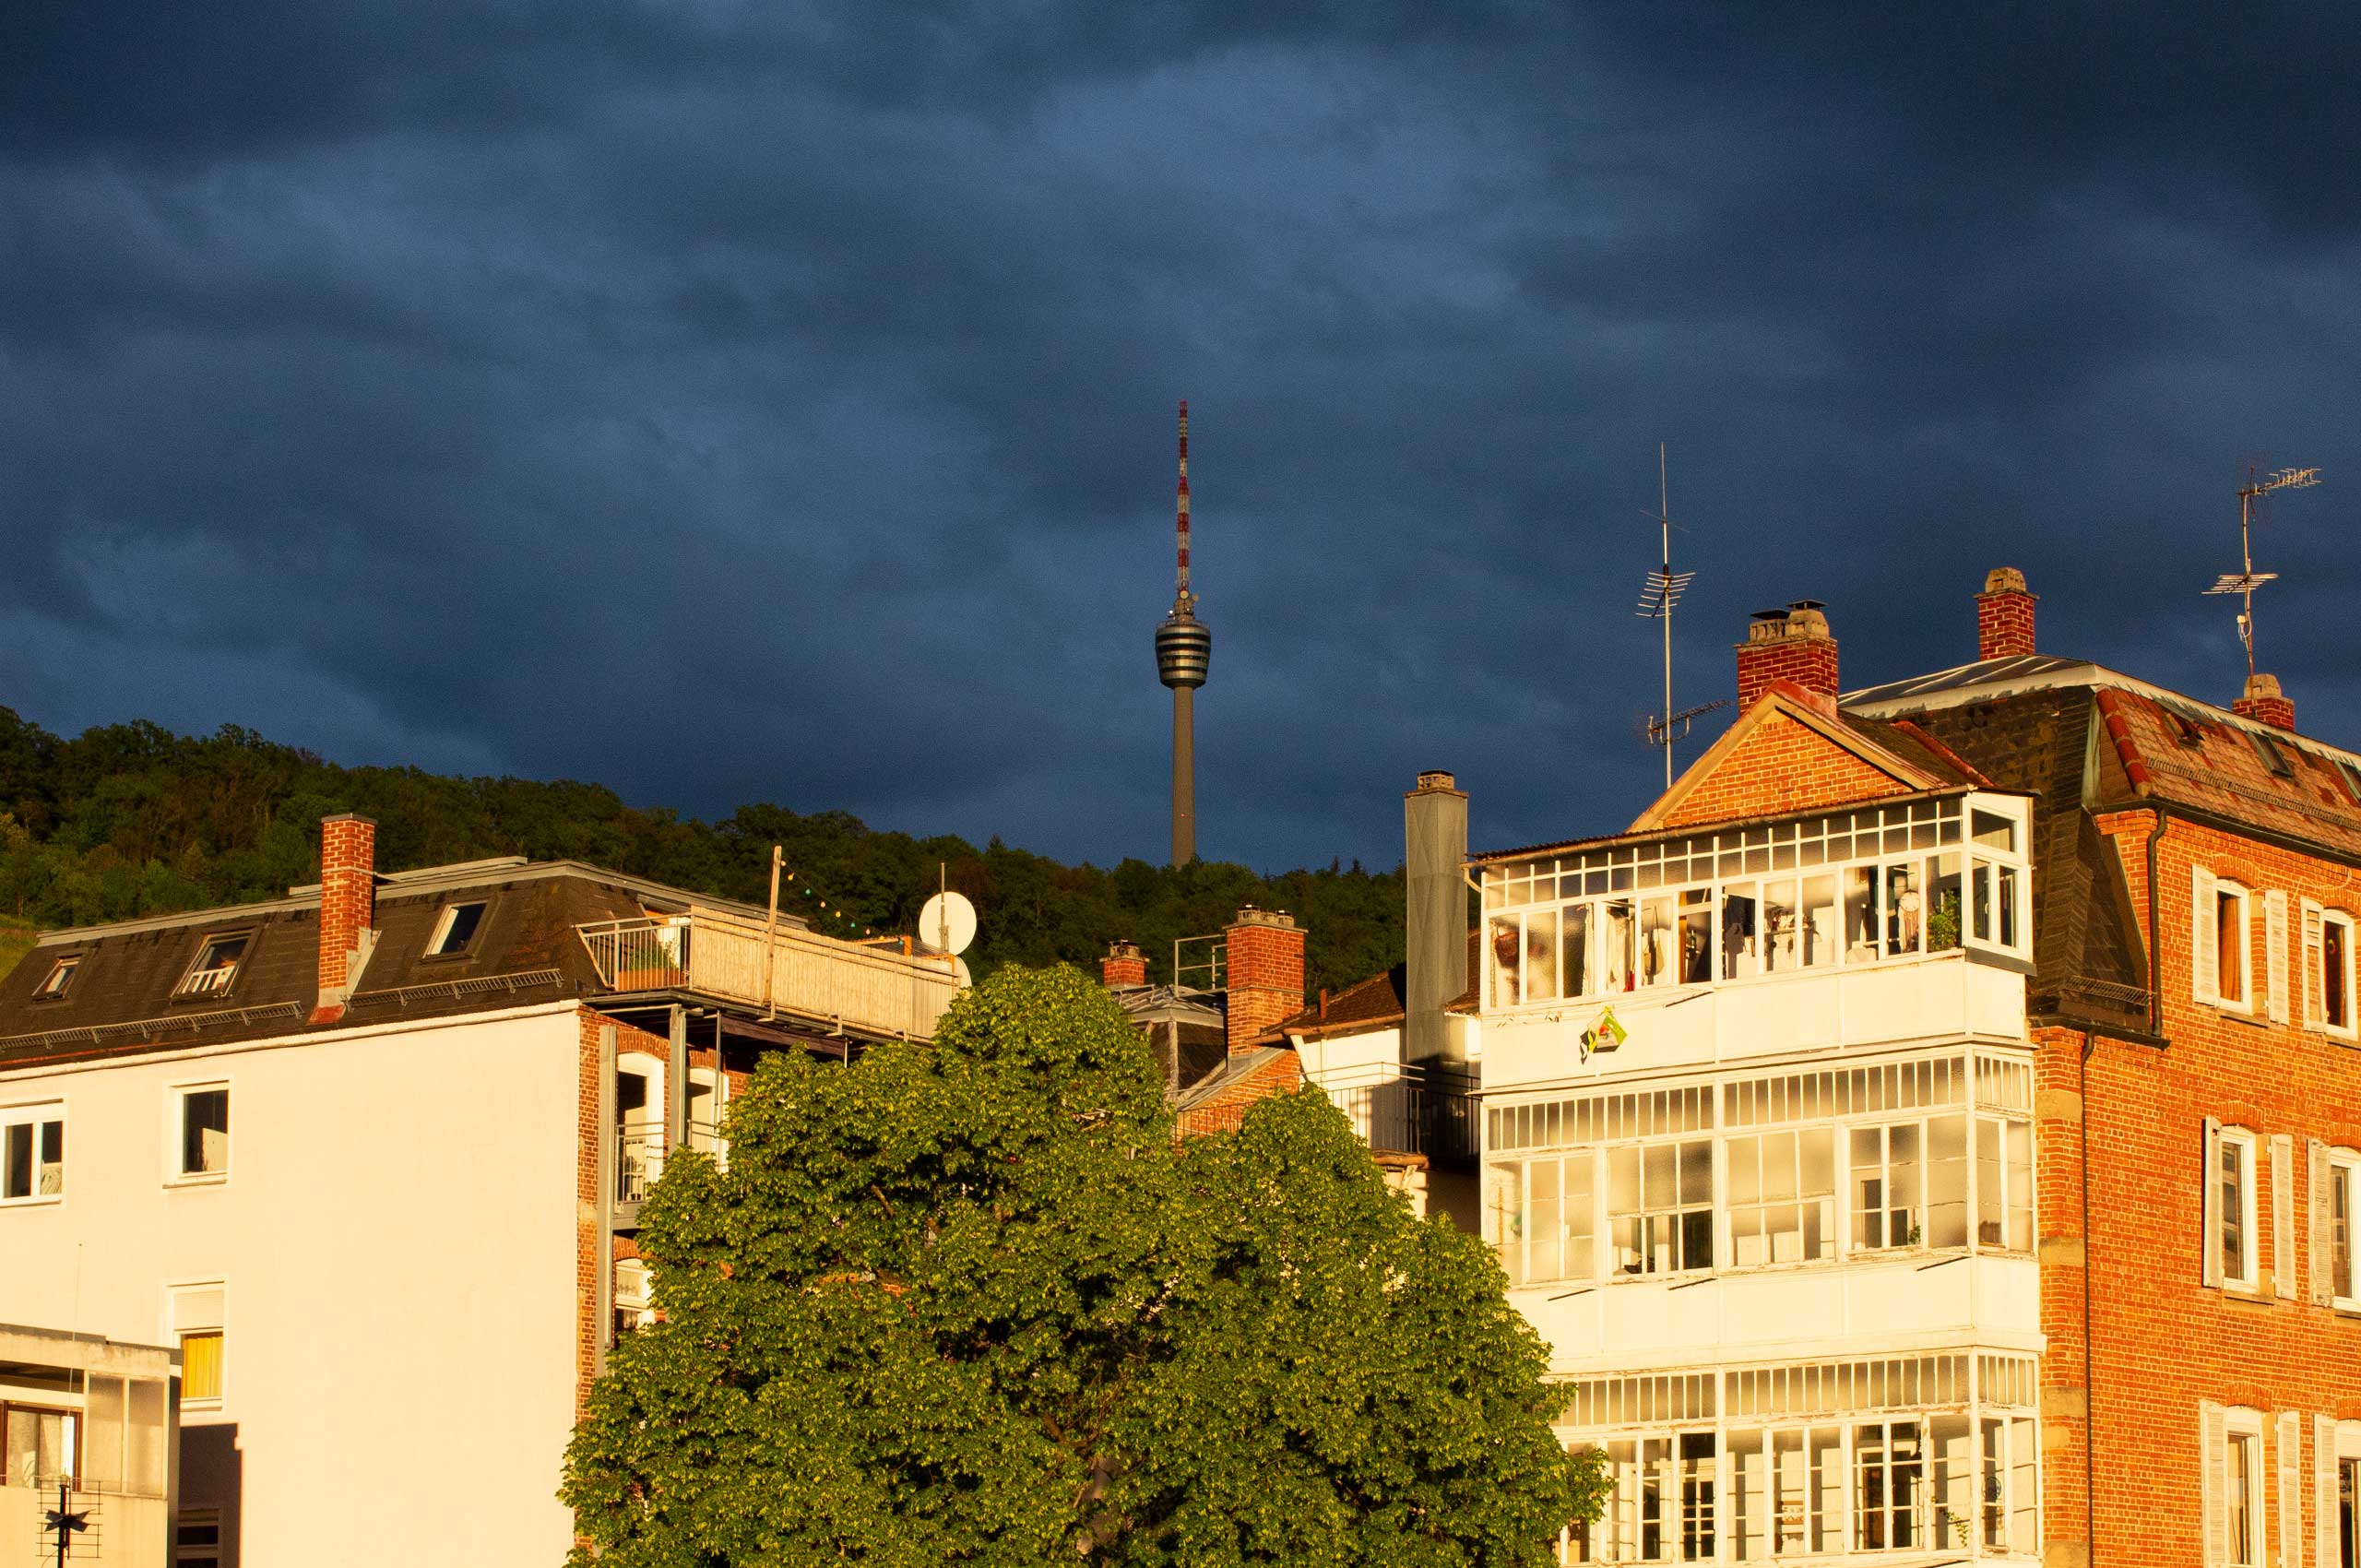 AUTOR: copy | TITLE: Bürofensterblicke: Dramatischer Sonnenuntergang über Stuttgart-Süd | DESCRIPTION: Kräftig dunkelblau-grauer Himmel (Kulisse) und golden angestrahlten Häusern (Vordergrund)
                        